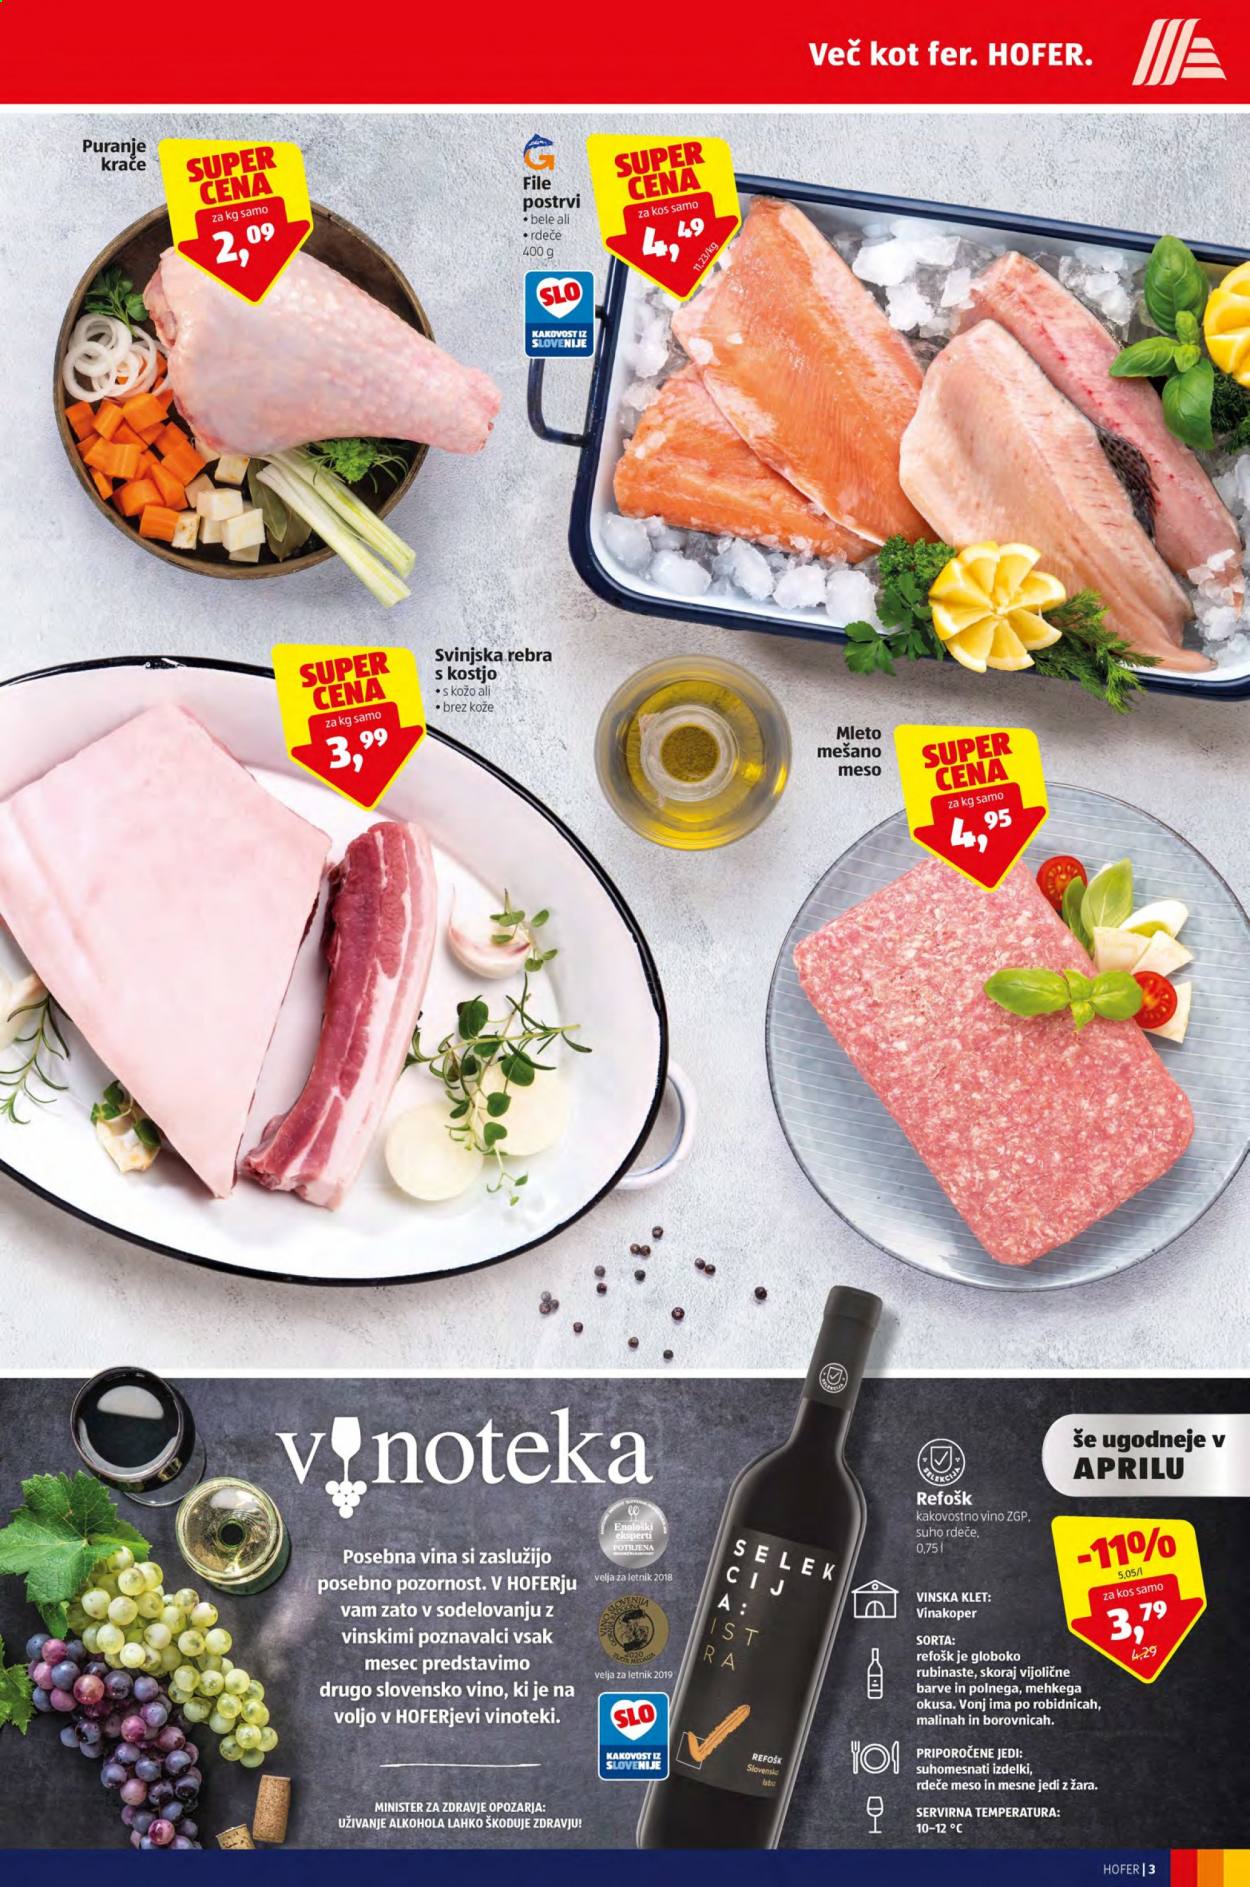 thumbnail - Hofer katalog - 9.4.2021 - 17.4.2021 - Ponudba izdelkov - rebra, svinjska rebra, svinjsko meso, vino. Stran 3.